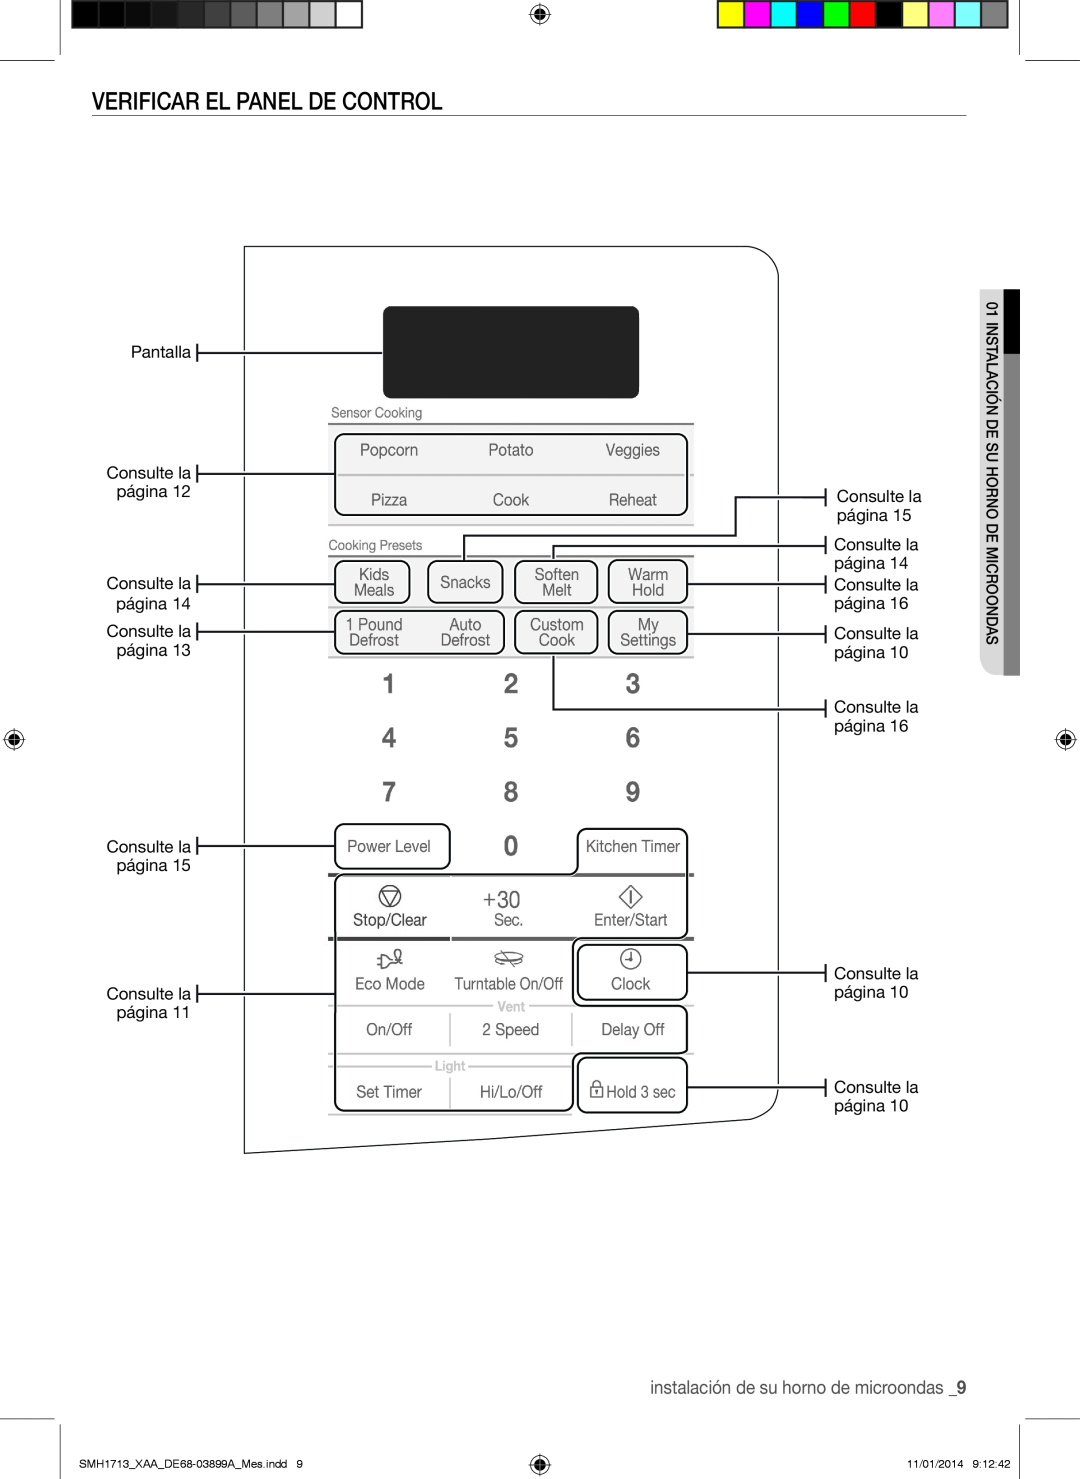 Samsung Verificar el panel de control, instalación de su horno de microondas, SMH1713XAADE68-03899AMes.indd, 11/01/2014 